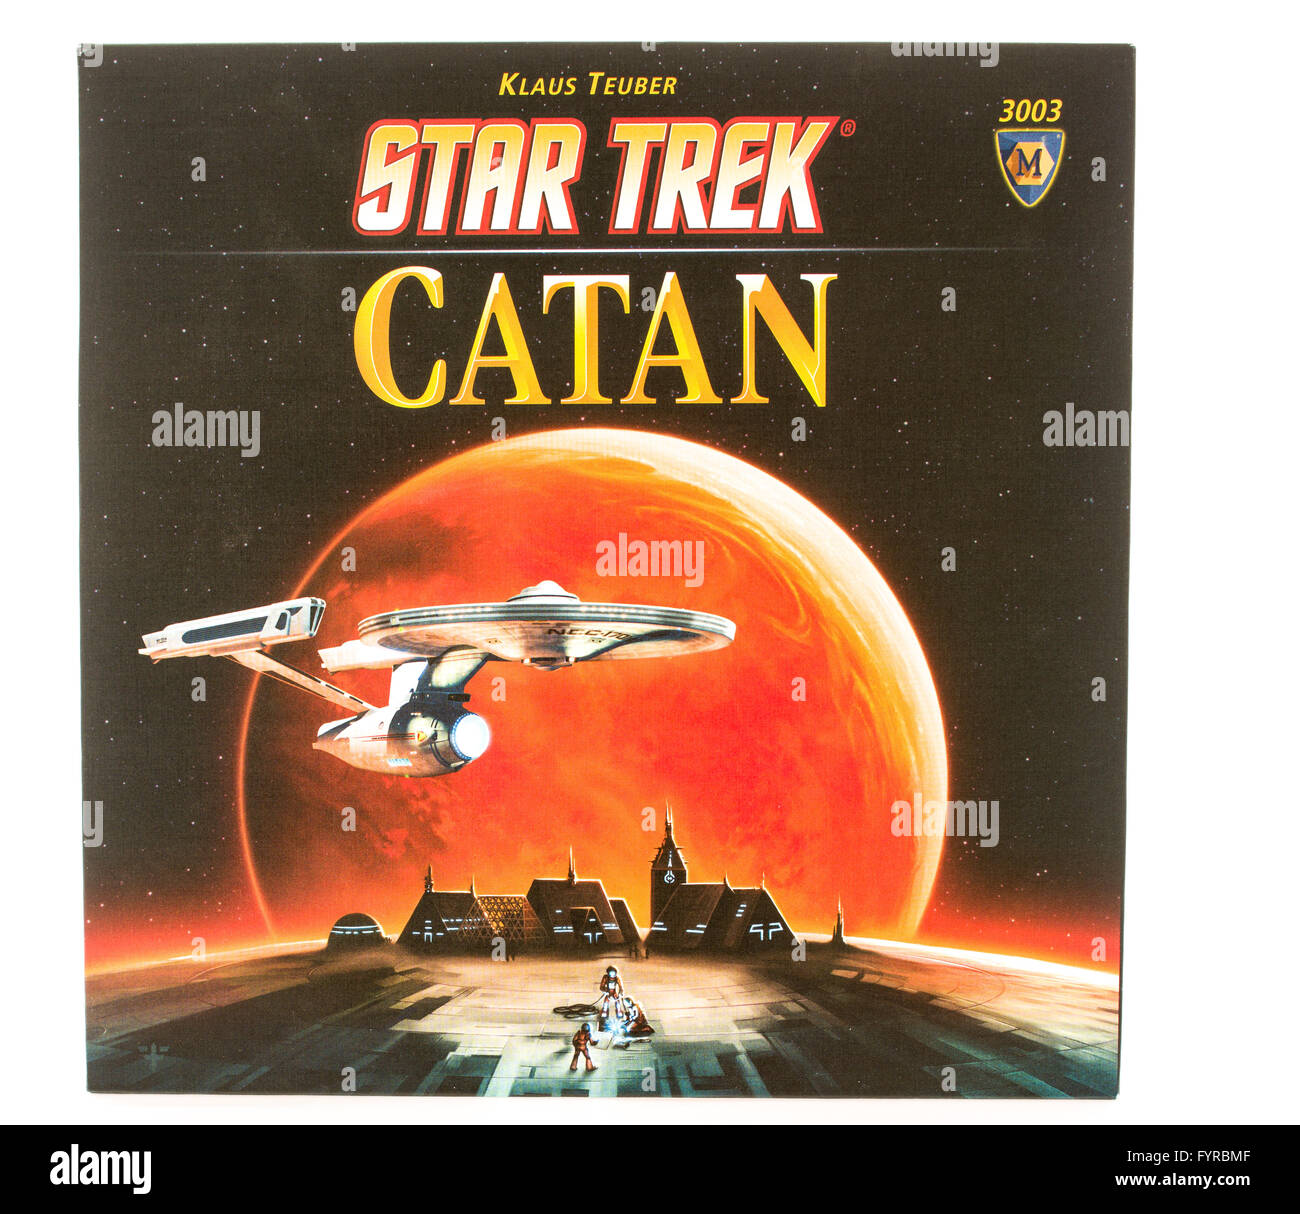 Winneconni, WI - 12 Giugno 2015: Box del popolare gioco di bordo di Catan in Star Trek edition. Foto Stock